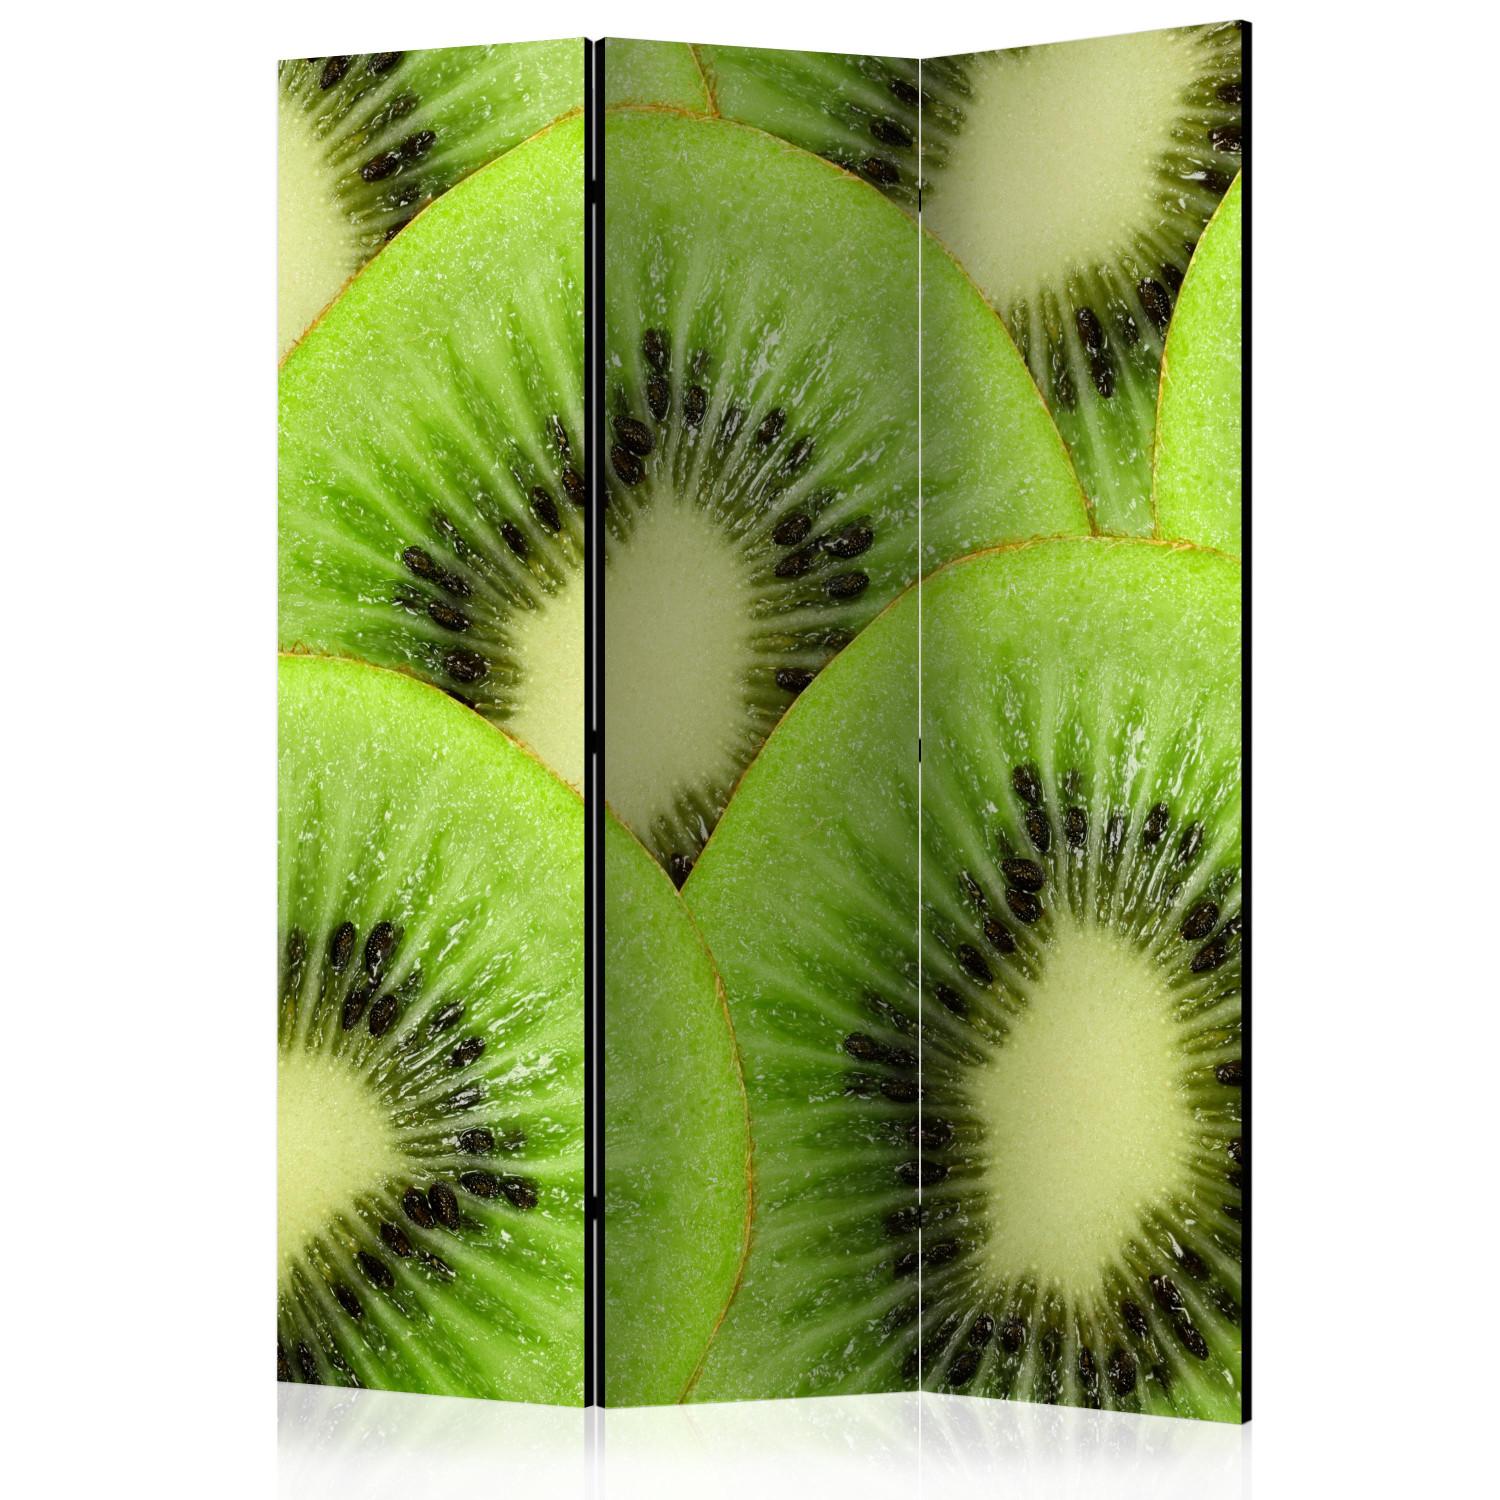 Biombo barato Rodajas de kiwi (3 piezas) - fruta tropical de color verde